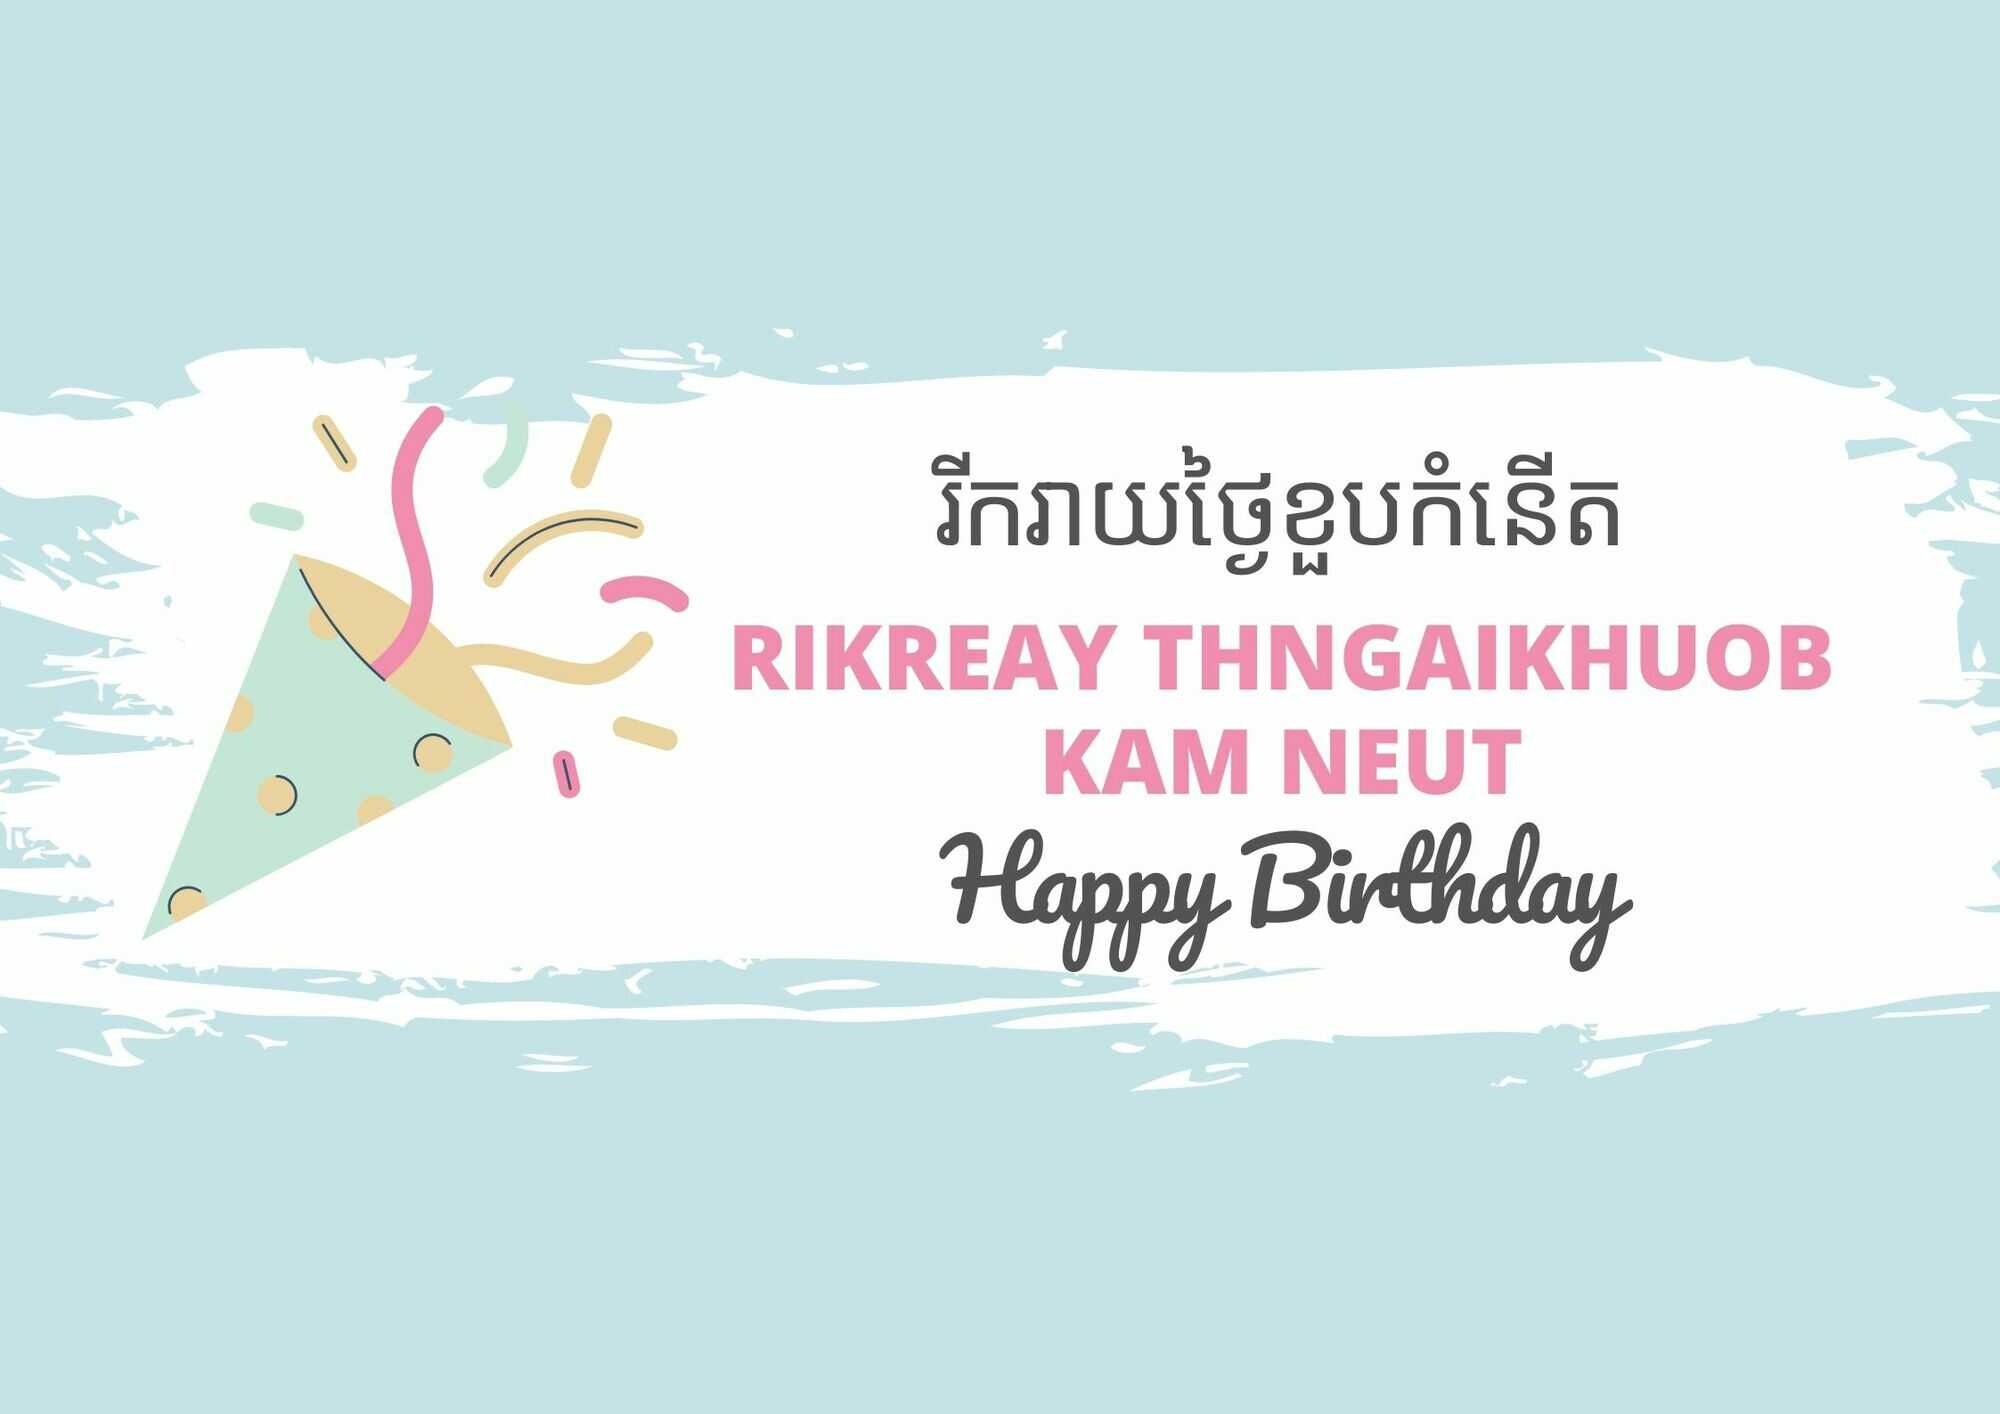 Happy Birthday in Khmer